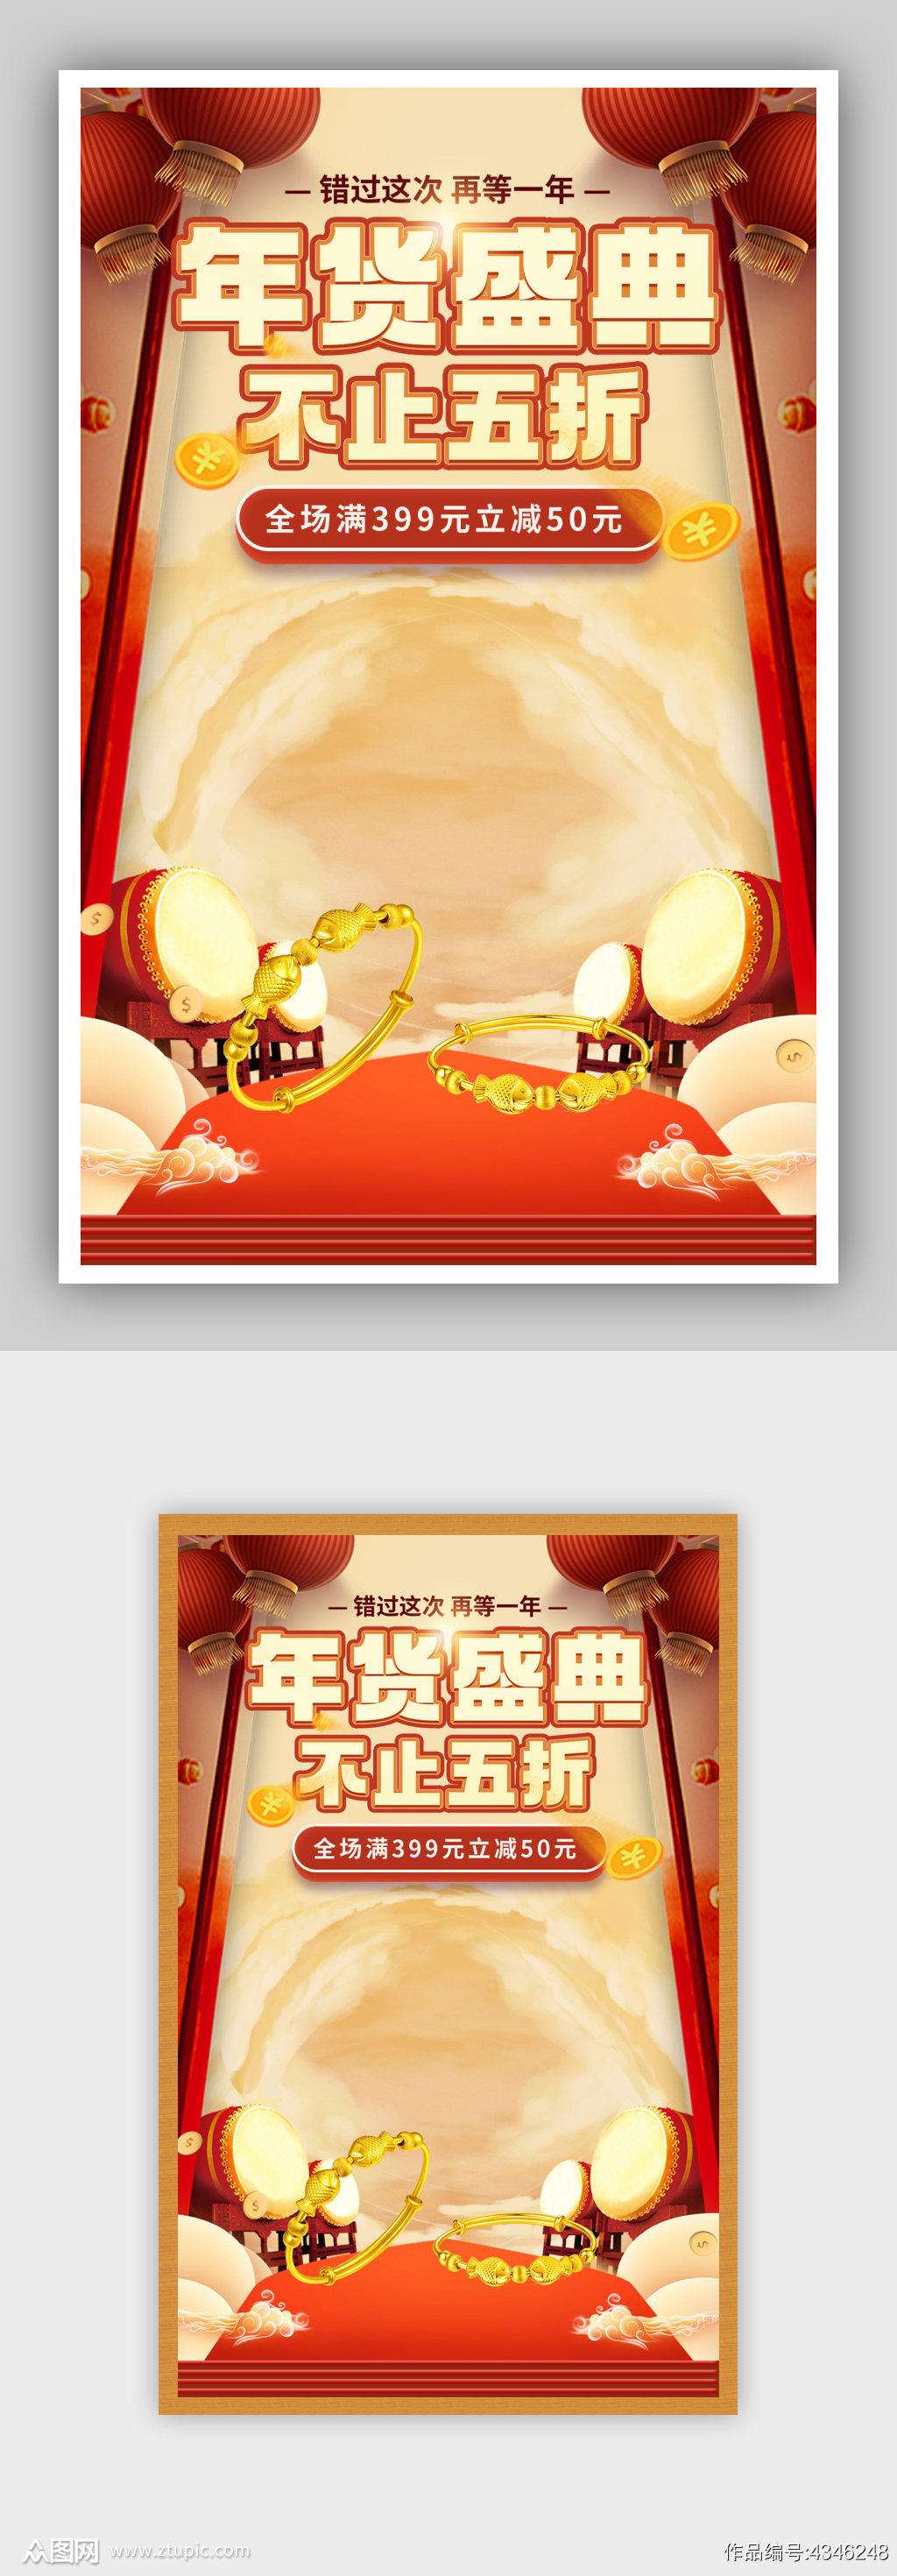 手绘国潮中国风天猫年货节促销海报素材